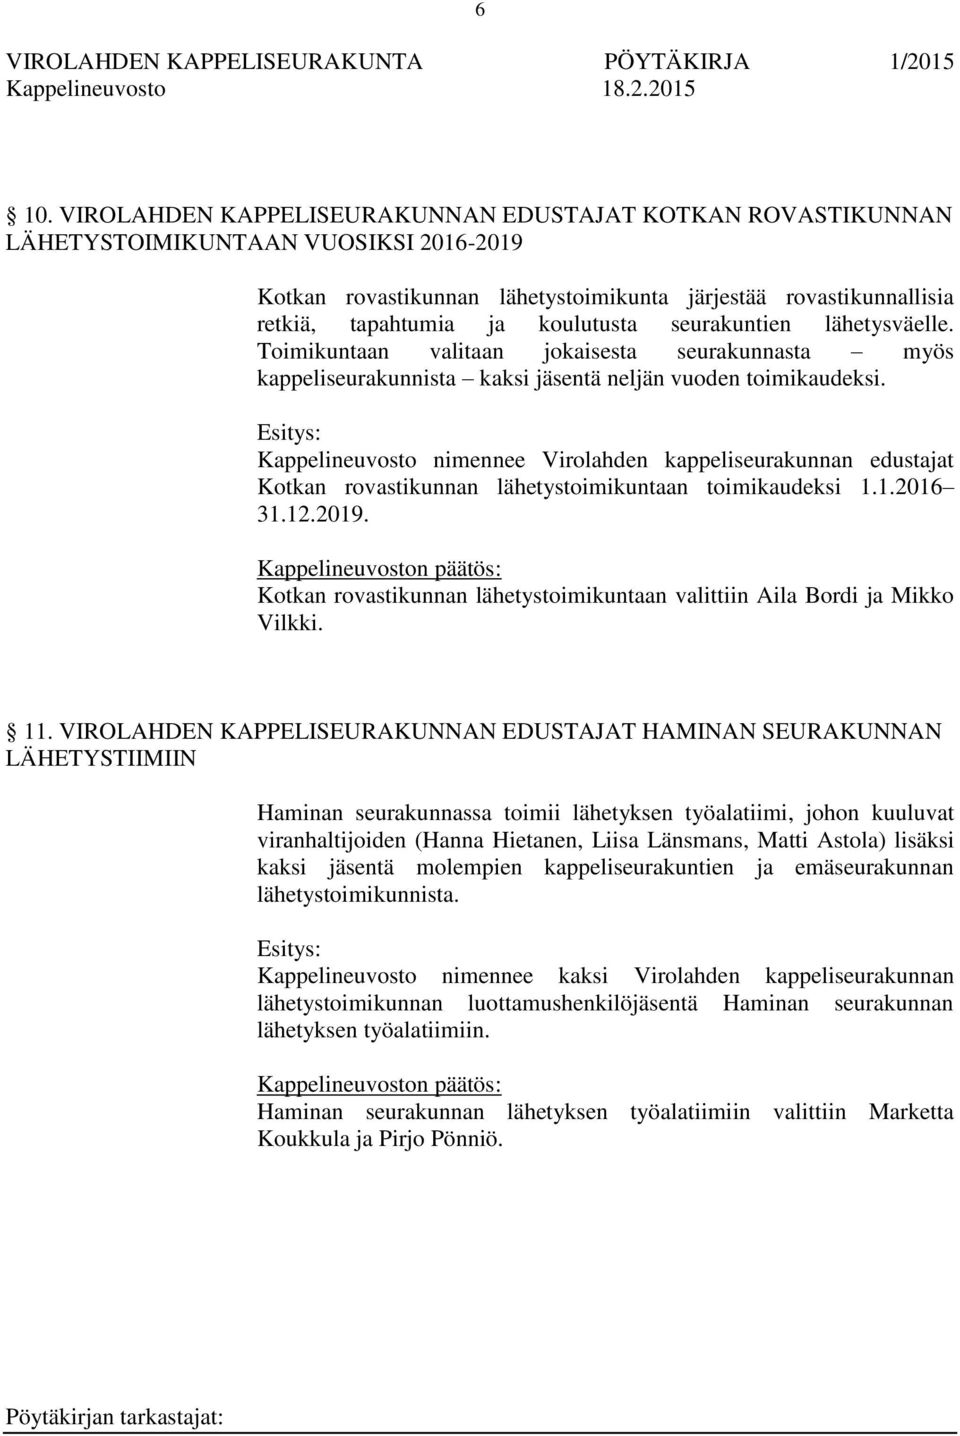 Kappelineuvosto nimennee Virolahden kappeliseurakunnan edustajat Kotkan rovastikunnan lähetystoimikuntaan toimikaudeksi 1.1.2016 31.12.2019.